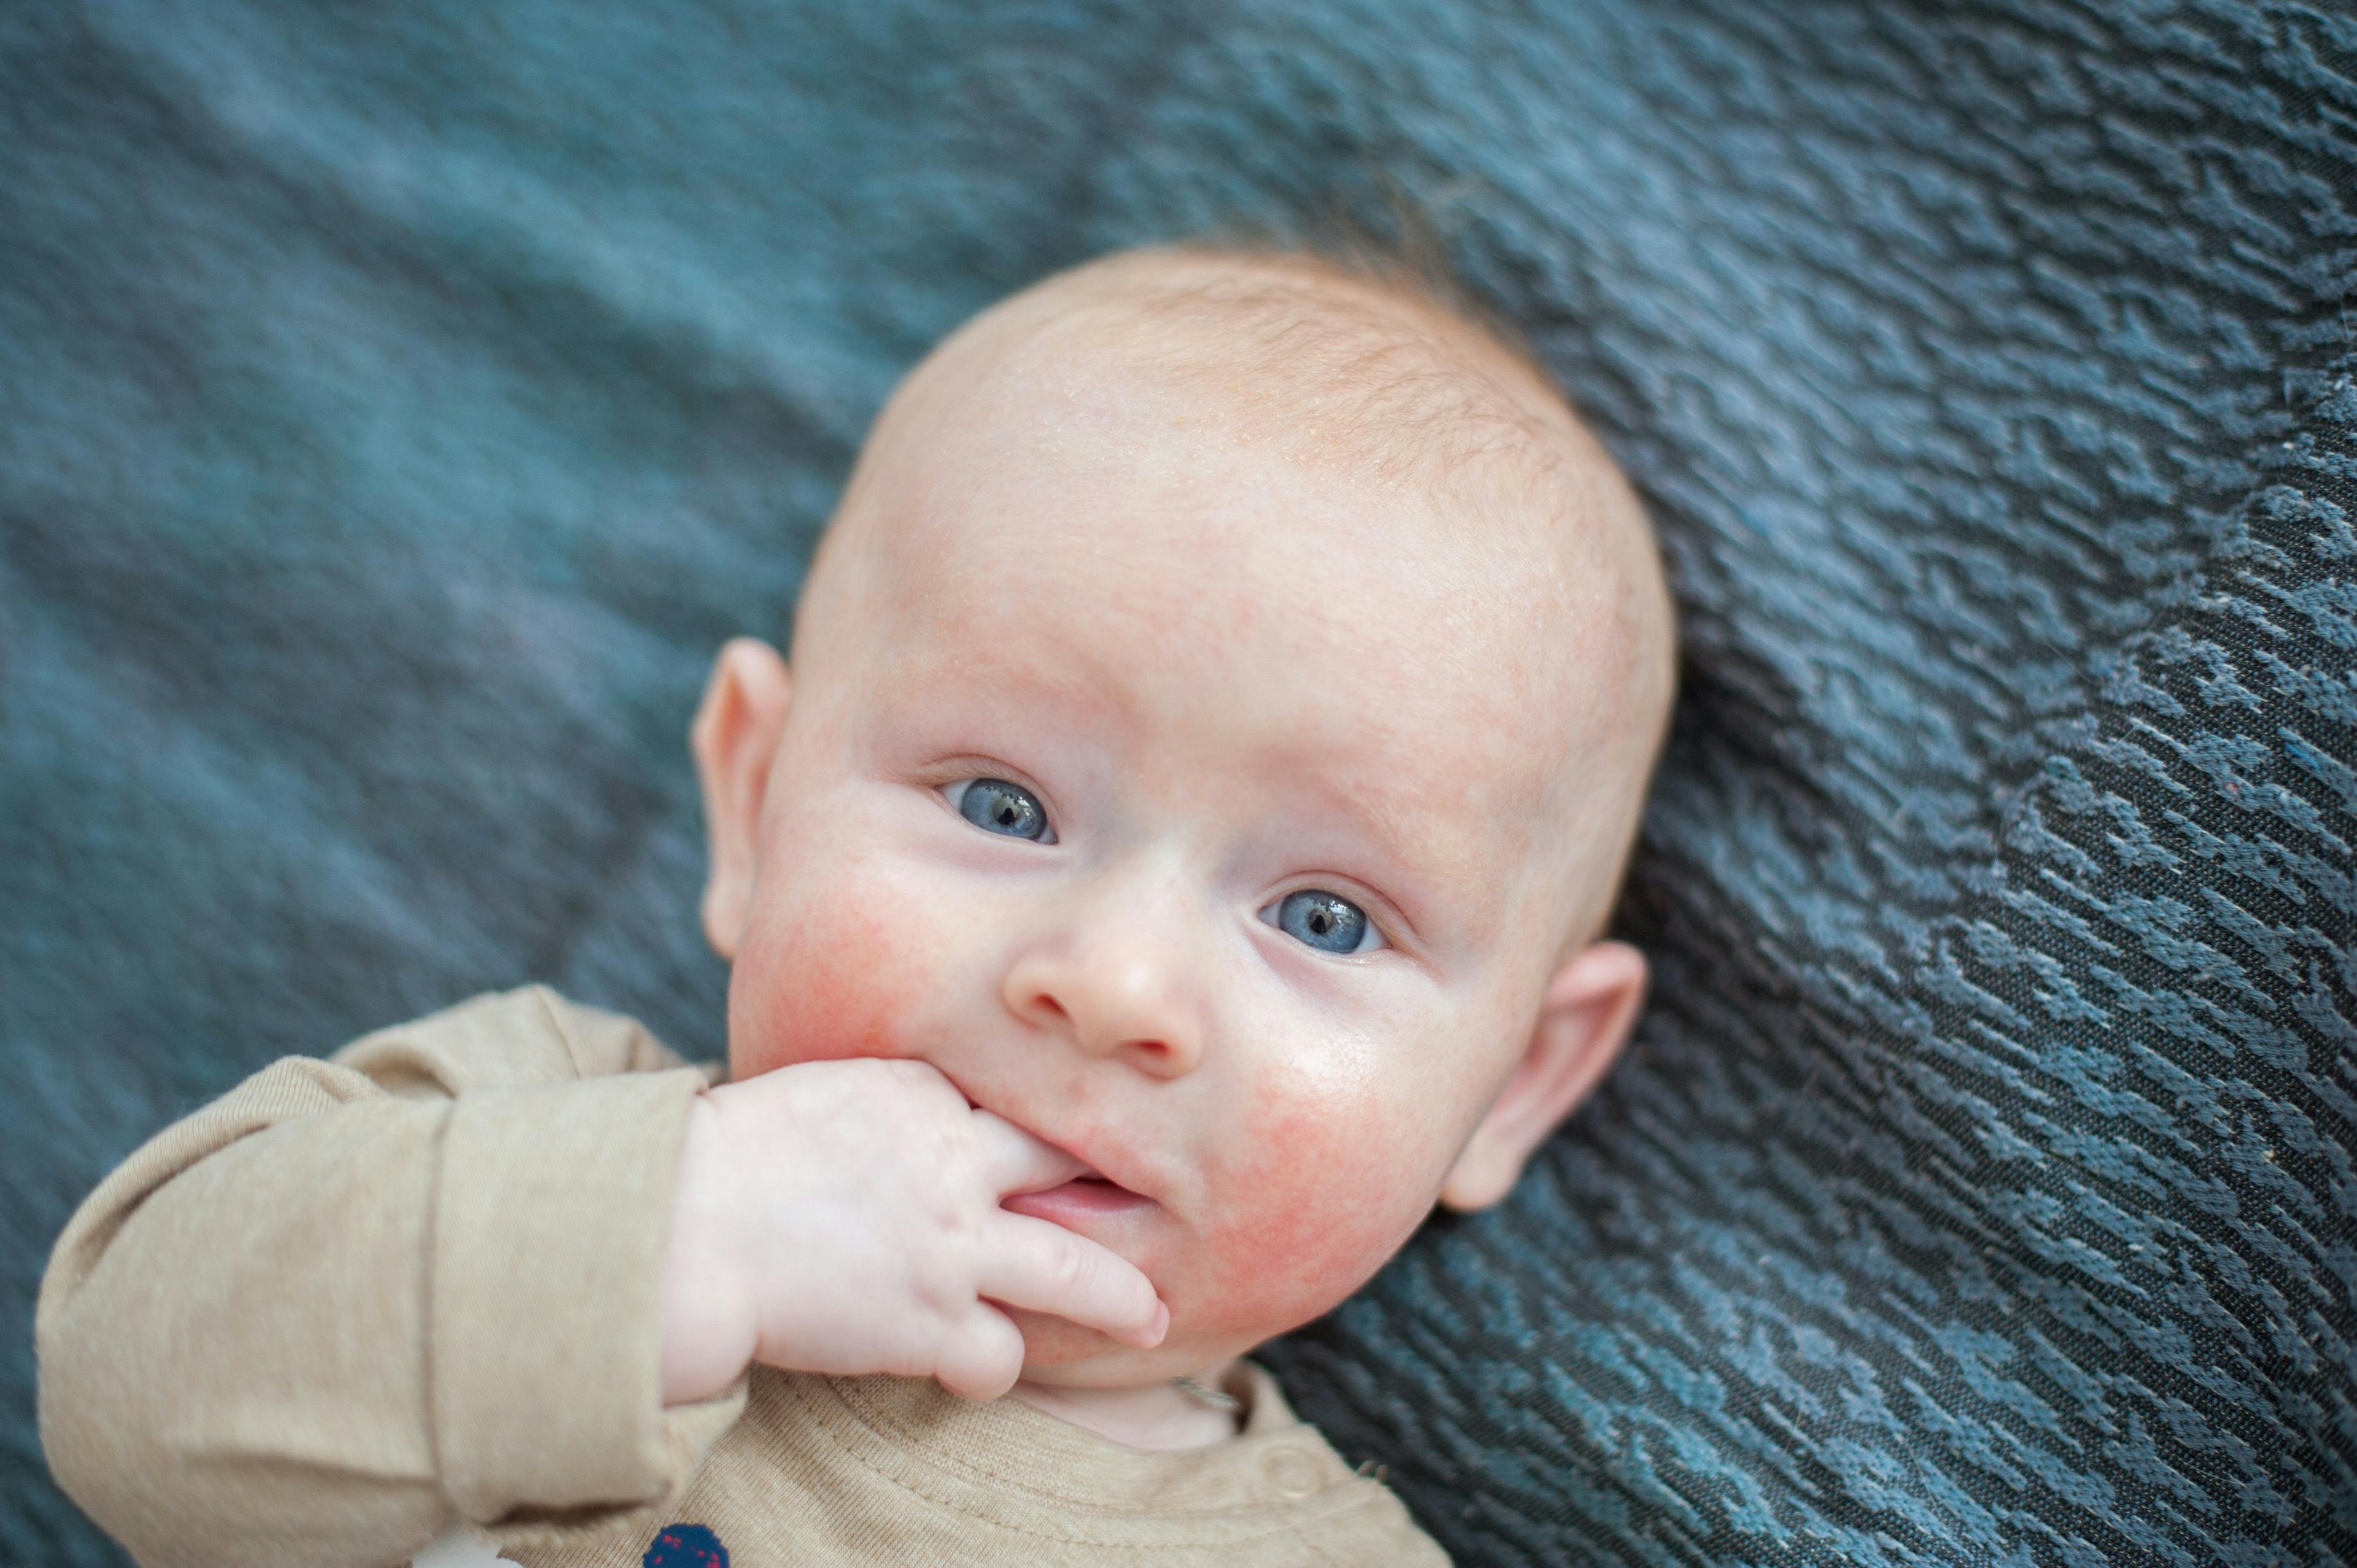 Skin eruptions on infants: self-resolving or concerning?